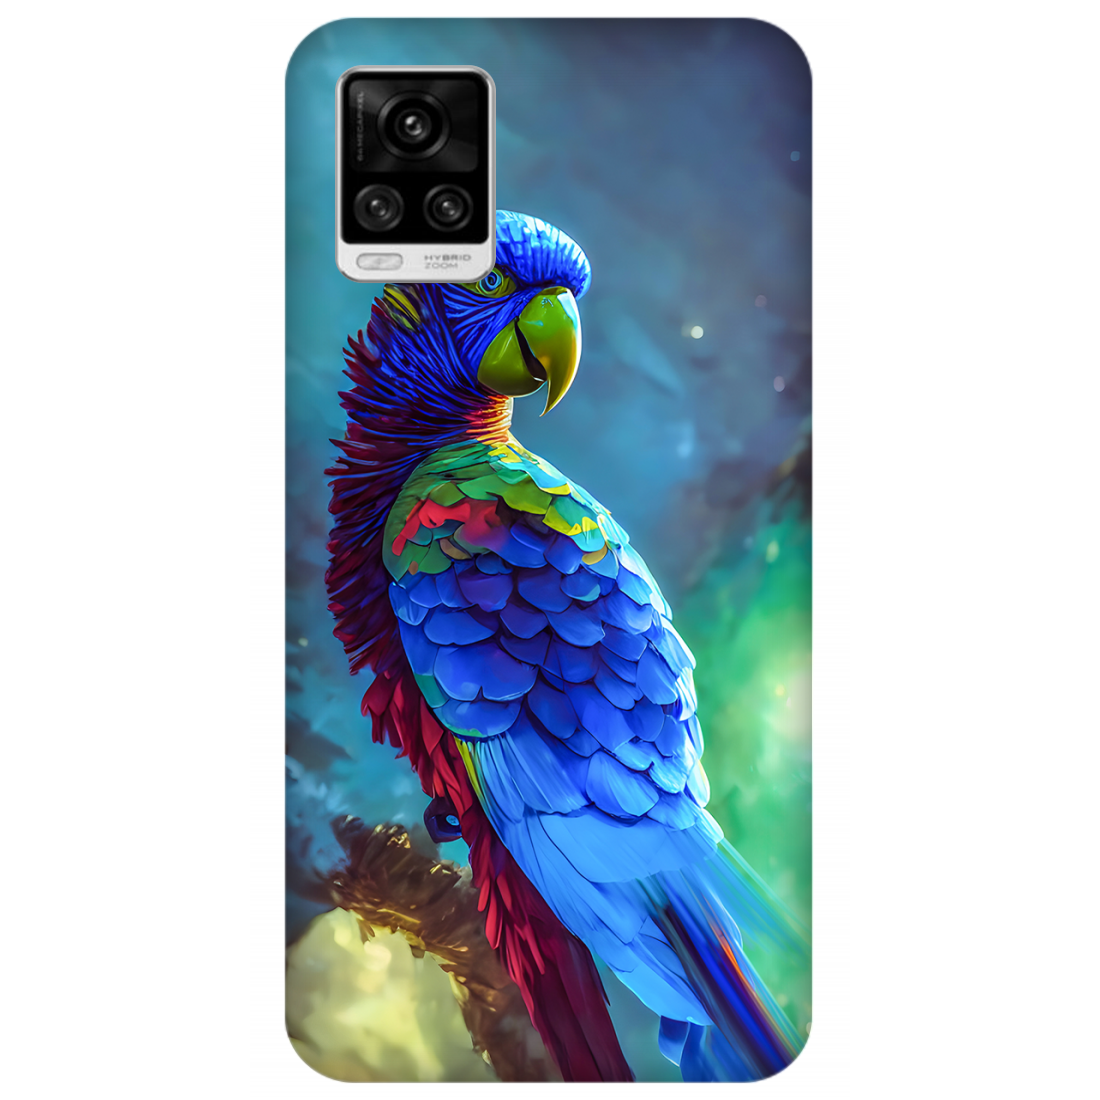 Vibrant Parrot in Dreamy Atmosphere Case Vivo V20 Pro 5G